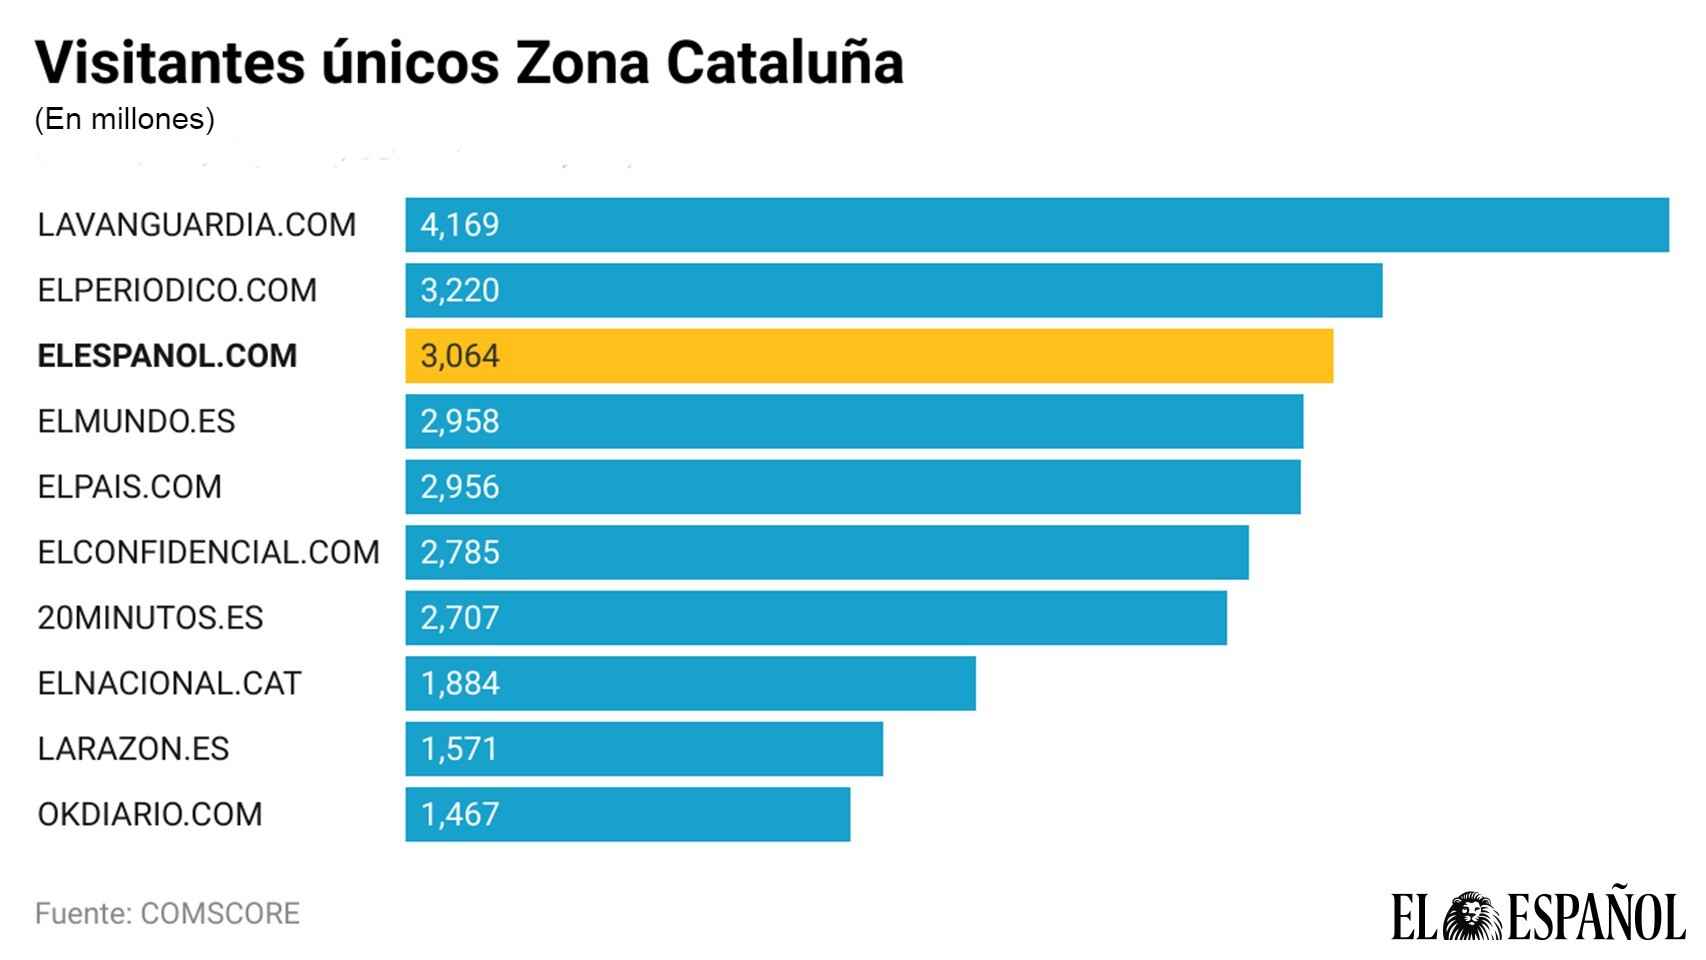 Visitantes únicos en Zona Cataluña.